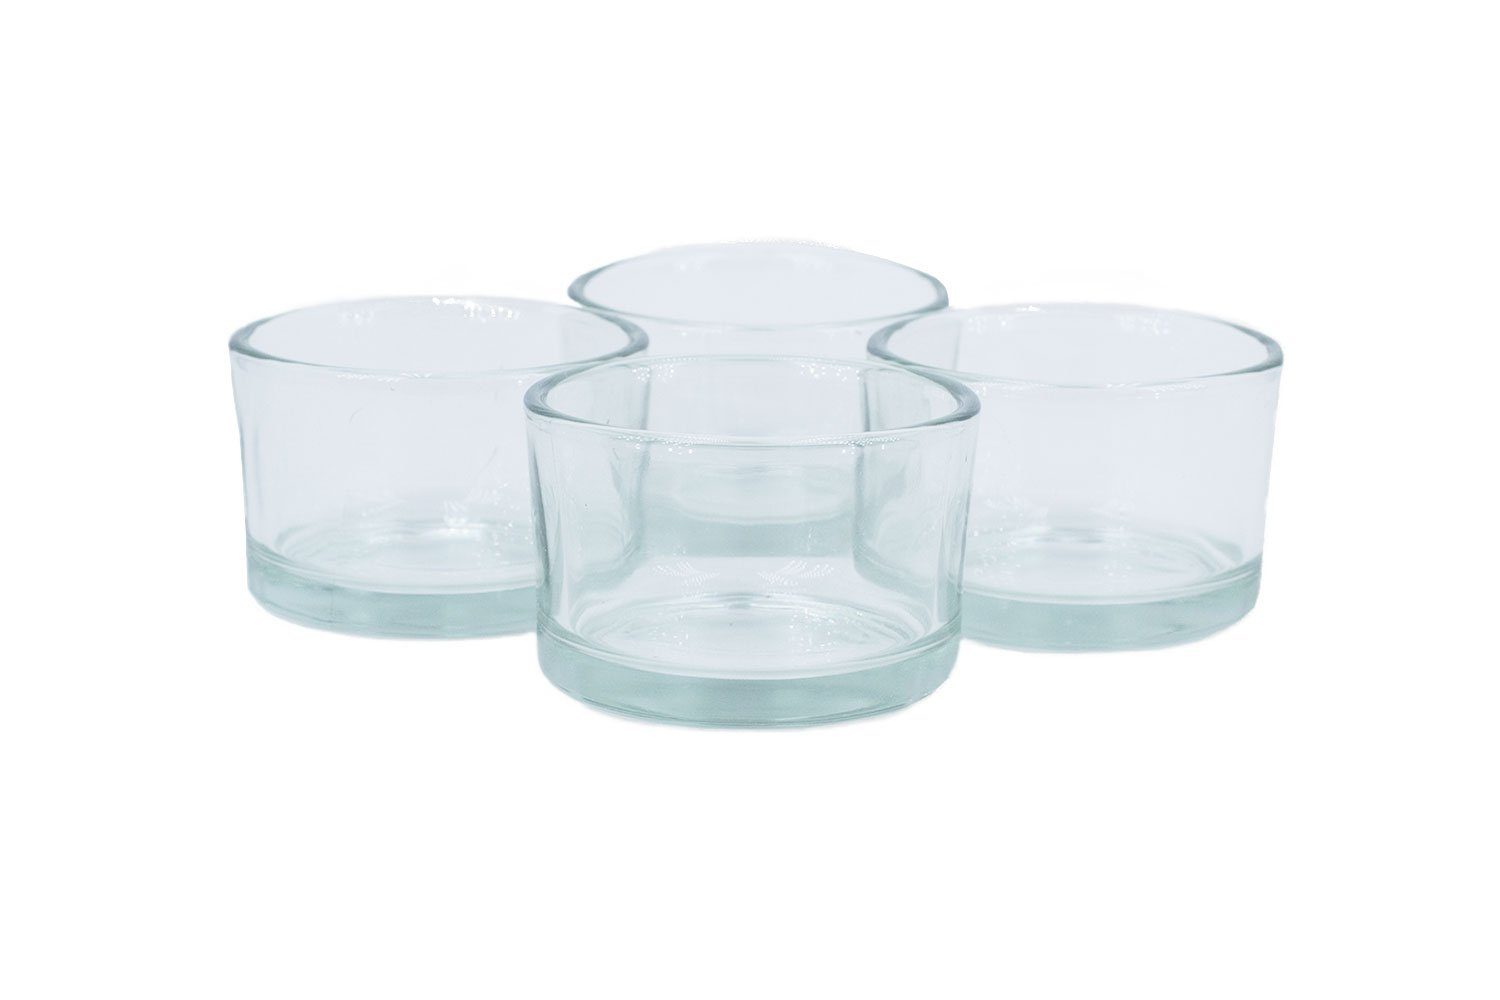 Creativery Teelichthalter, Teelichtgläser klein 51x33mm klar/transparent  4er Set | Vorratsgläser